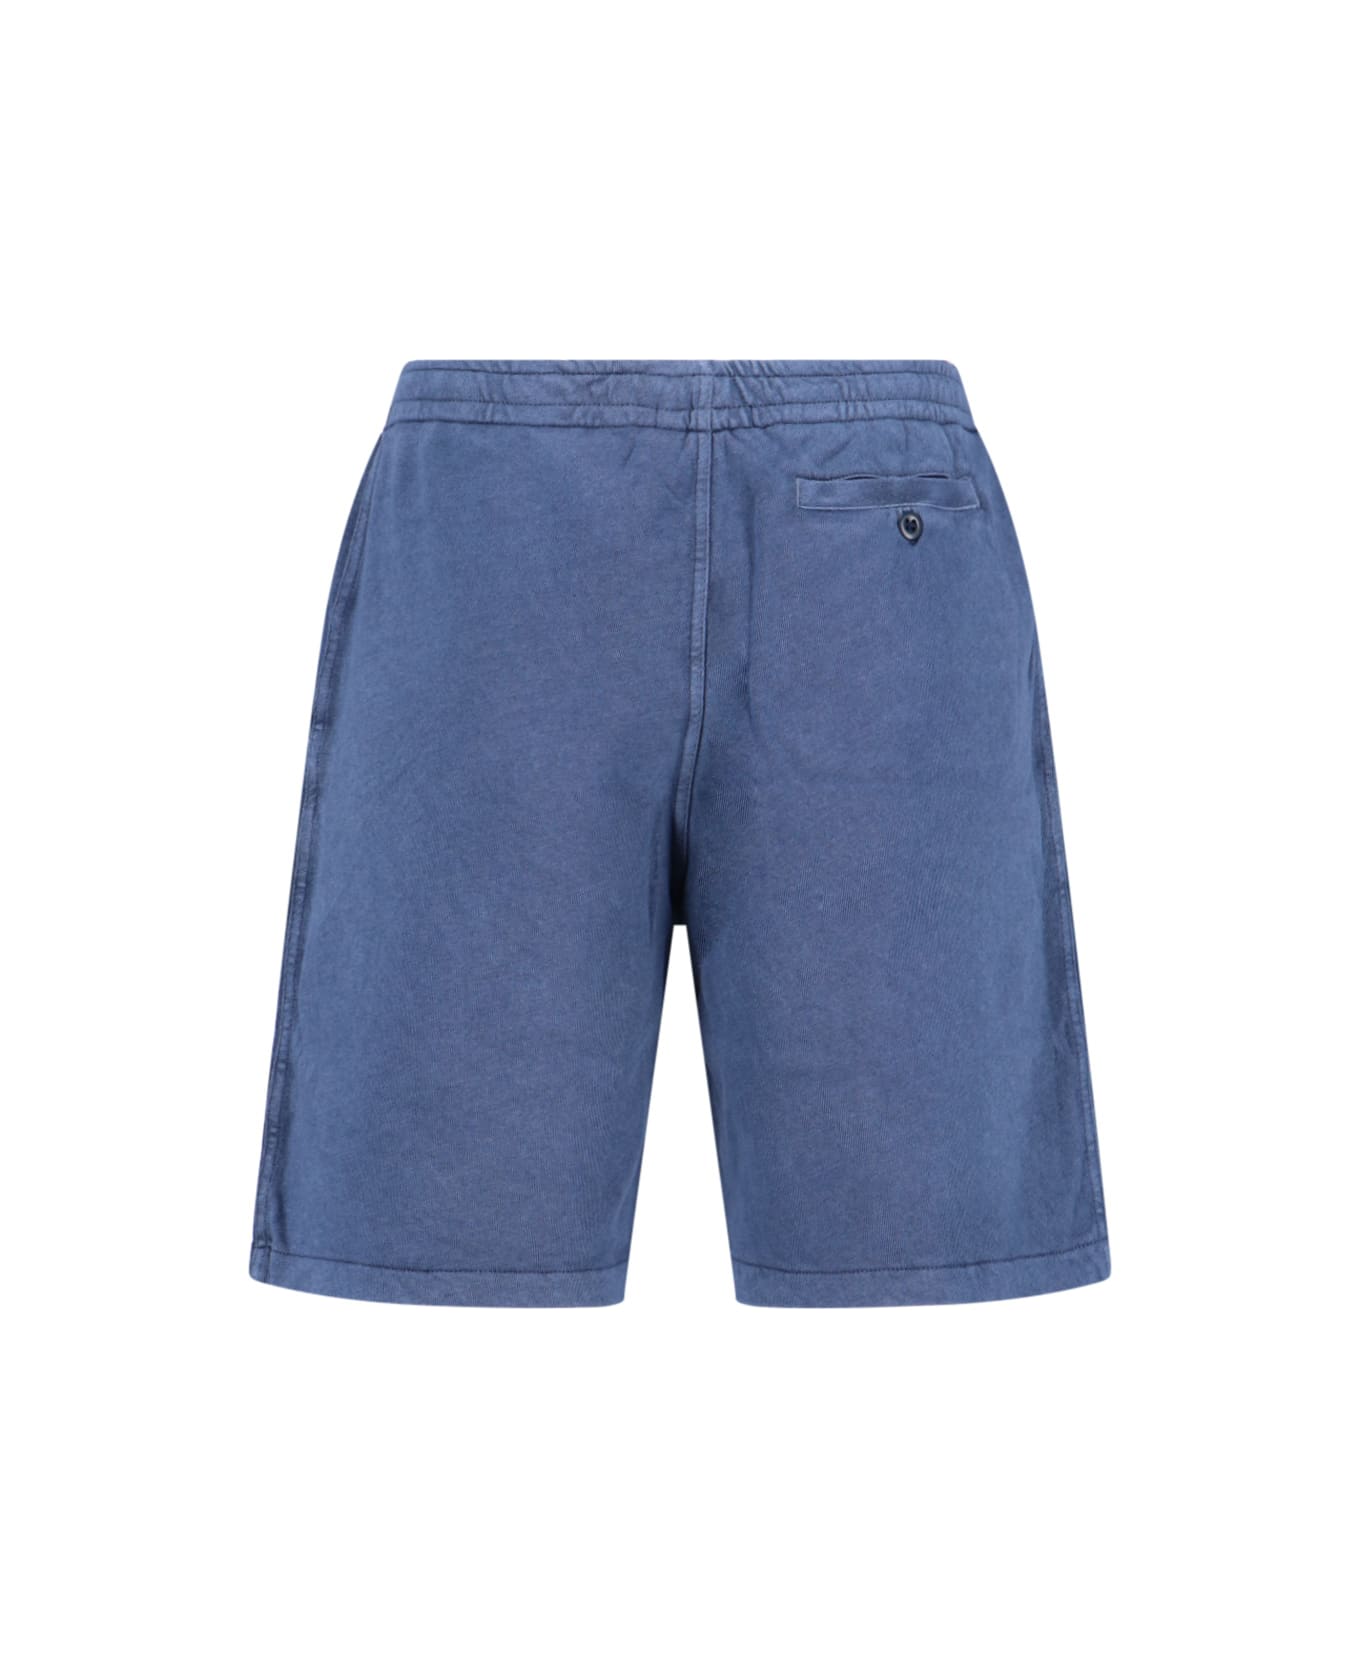 Polo Ralph Lauren Cotton Shorts - blue